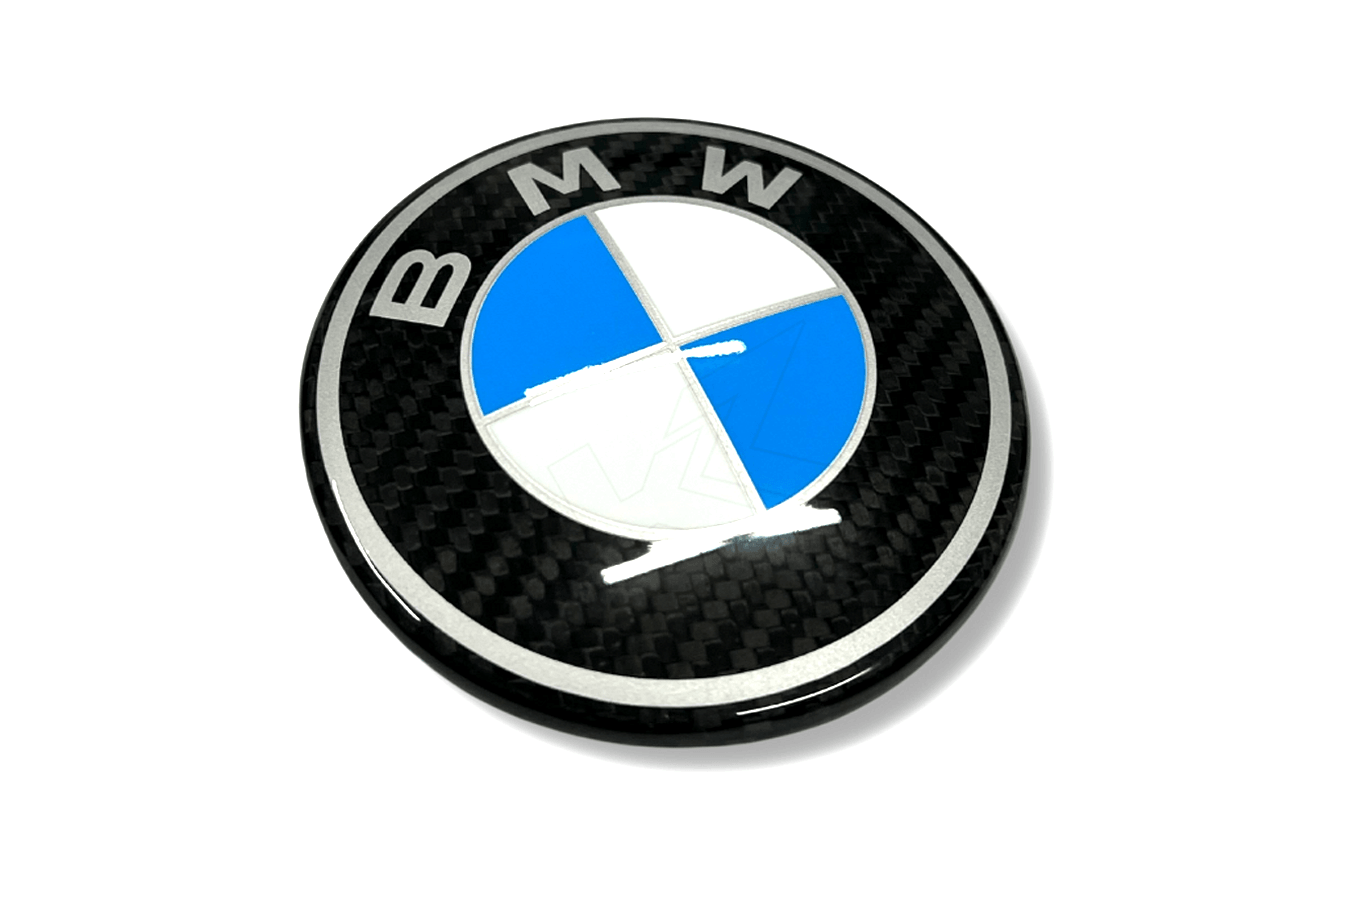 BMW Roundel Emblem Covers - OEM Style Carbon Emblem - K2 Industries